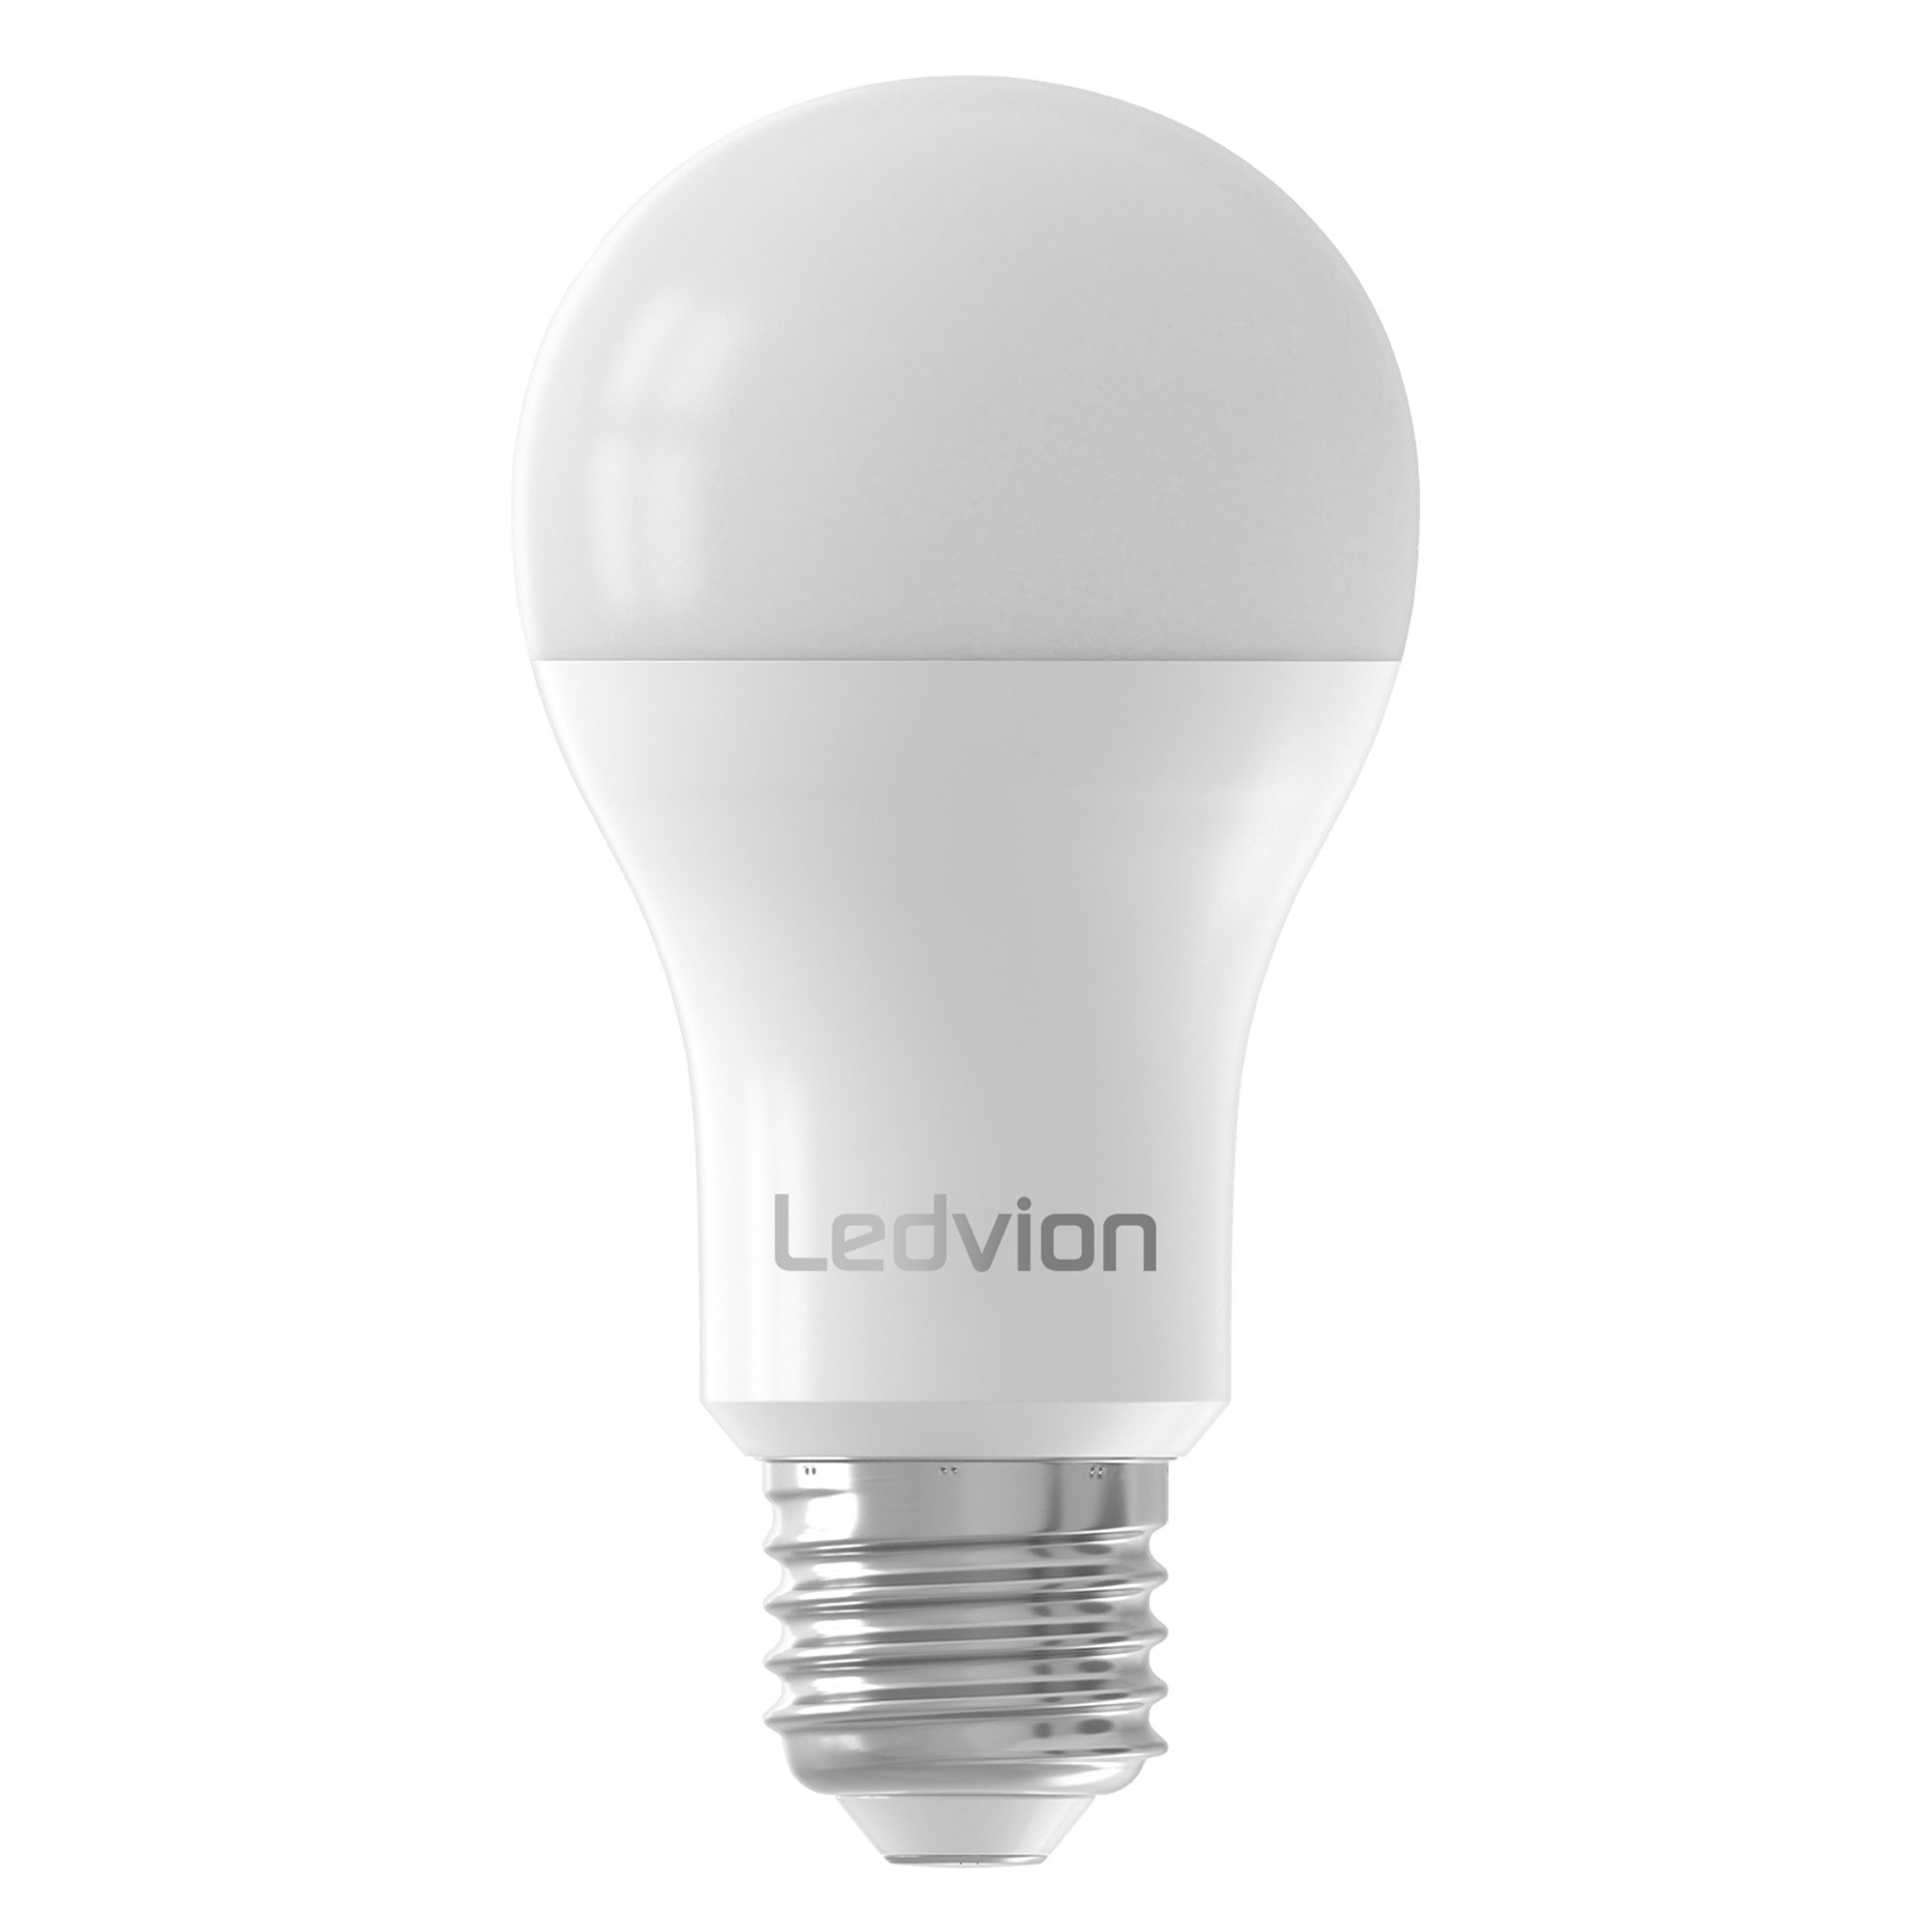 nabootsen Outlook Uitsluiting Ledvion Dimbare E27 LED Lamp - 8.8W - 2700K - 806 Lumen - Lightexpert.nl